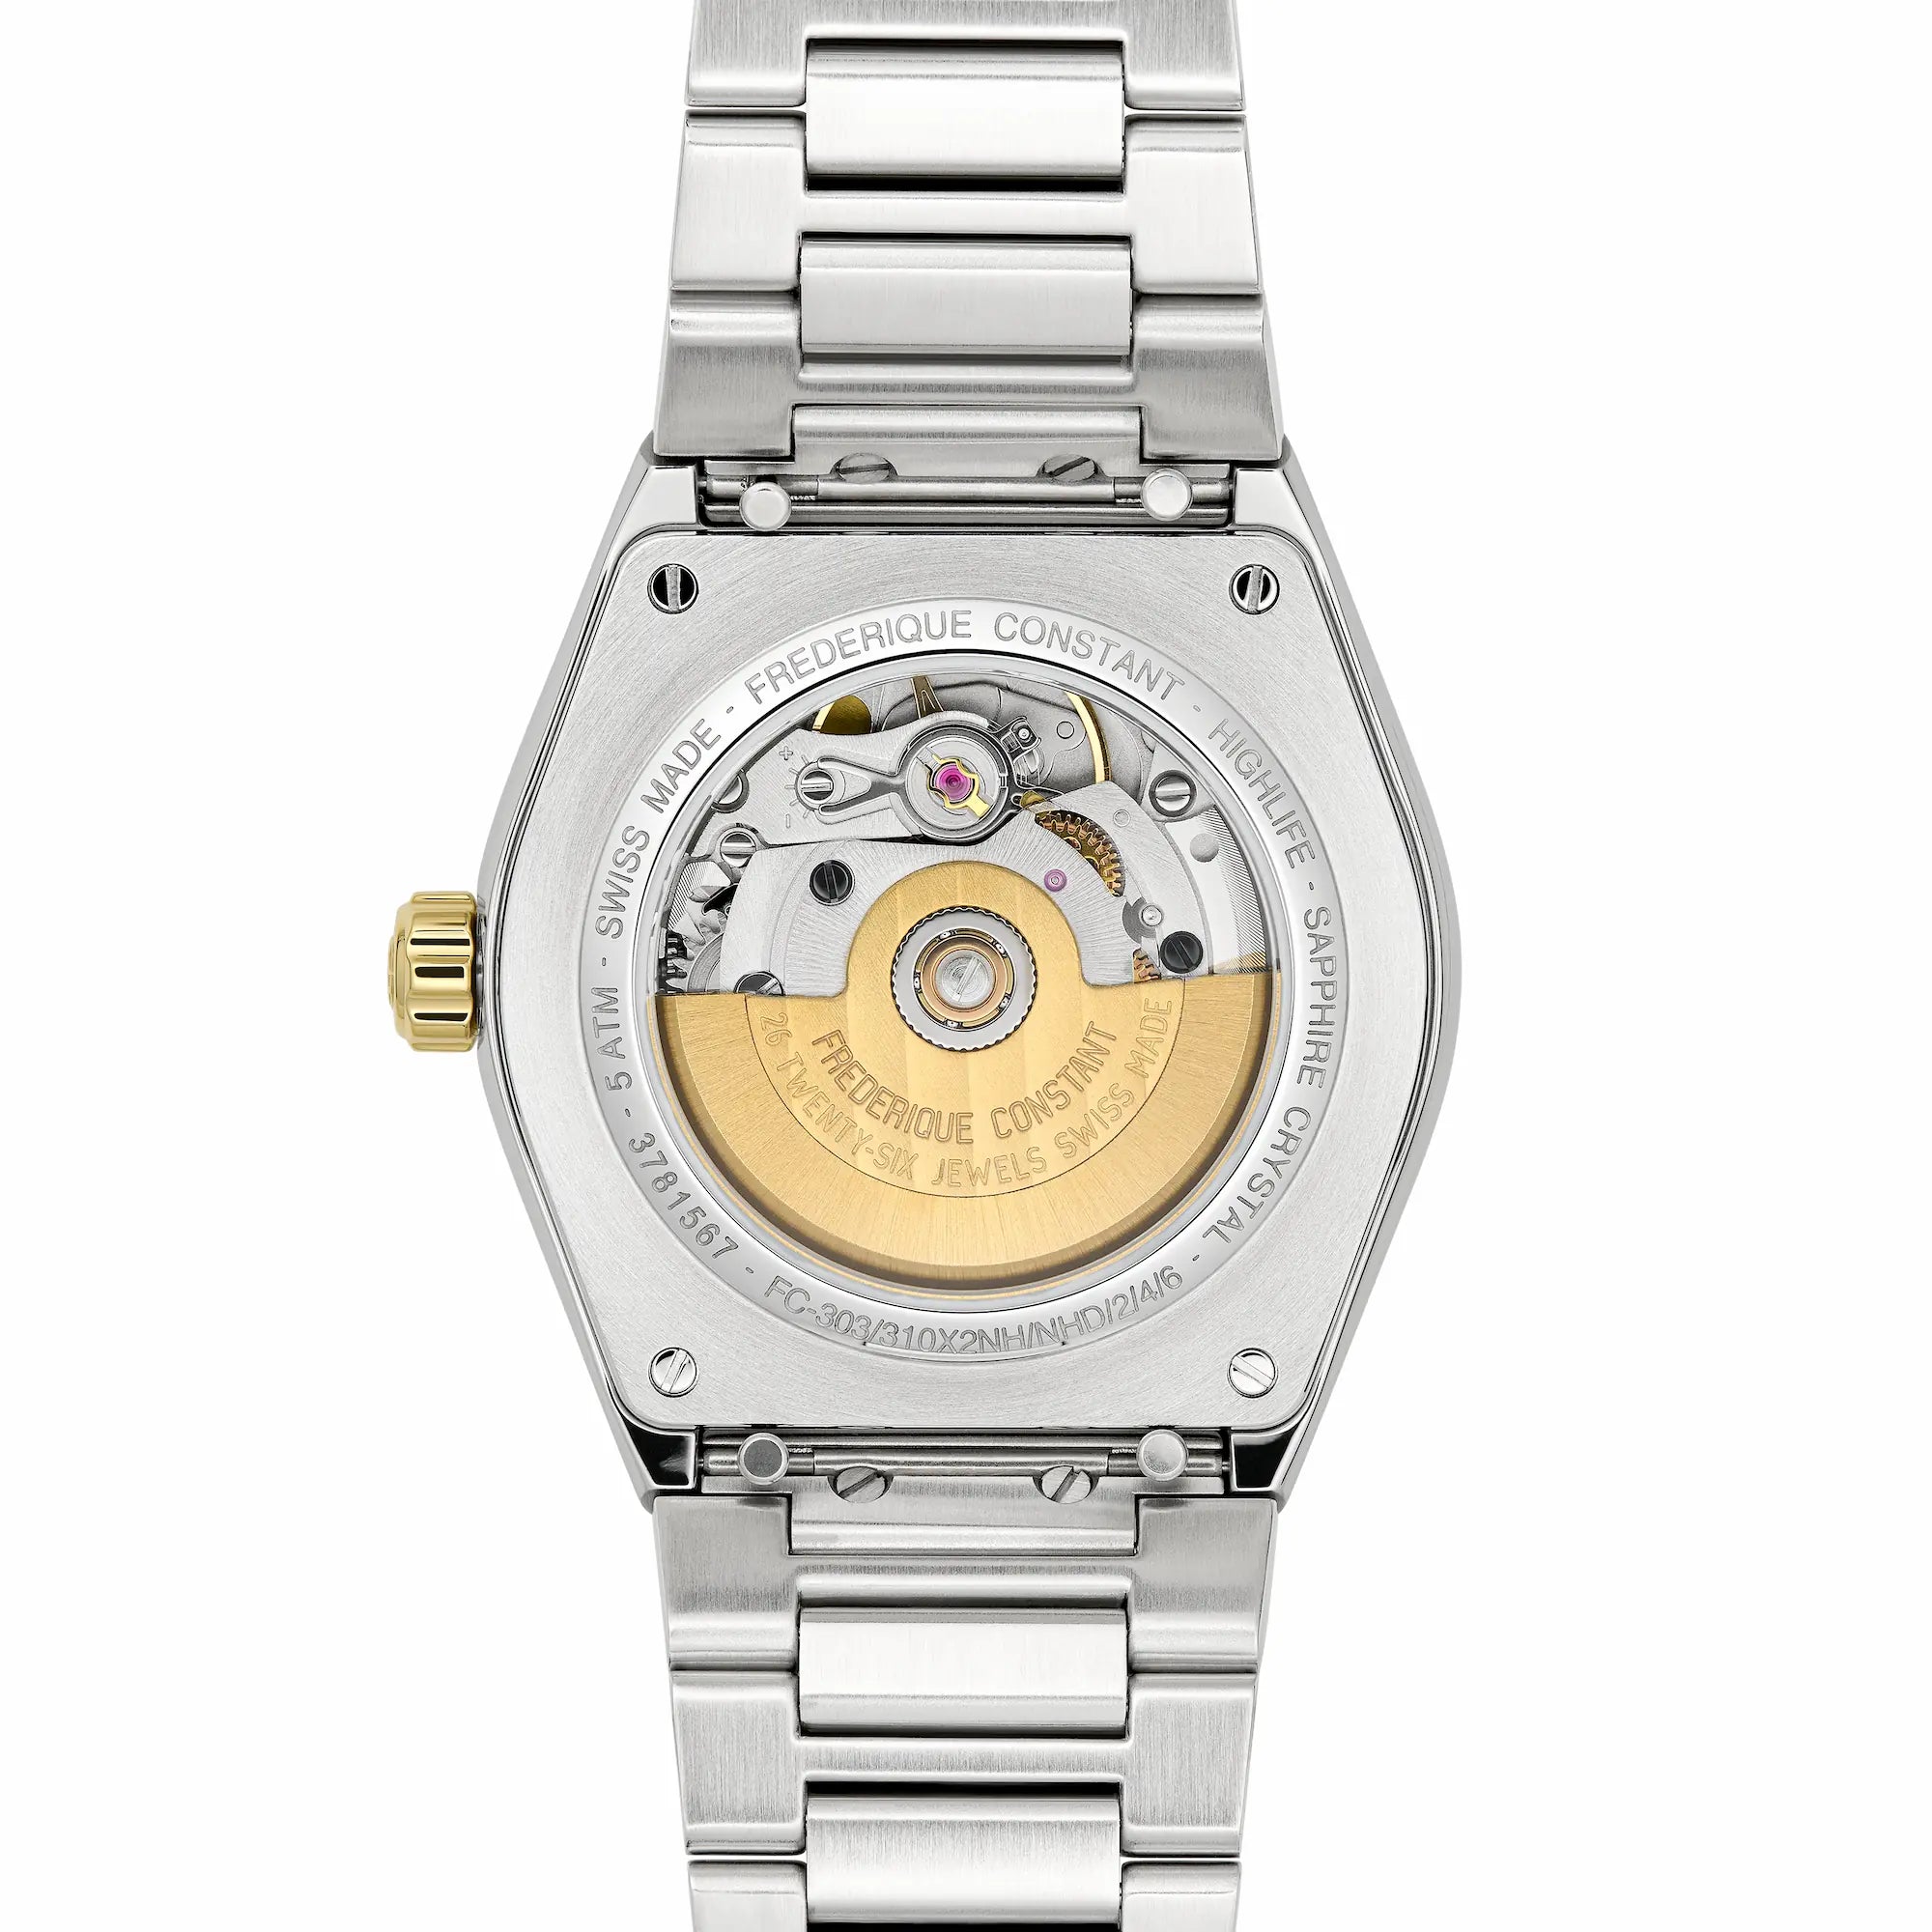 Rückseite der Frederique Constant Uhr "Highlife Ladies Automatic" mit einem weißen Zifferblatt und Stahl-Gold-Gehäuse mit Blick auf das Uhrwerk